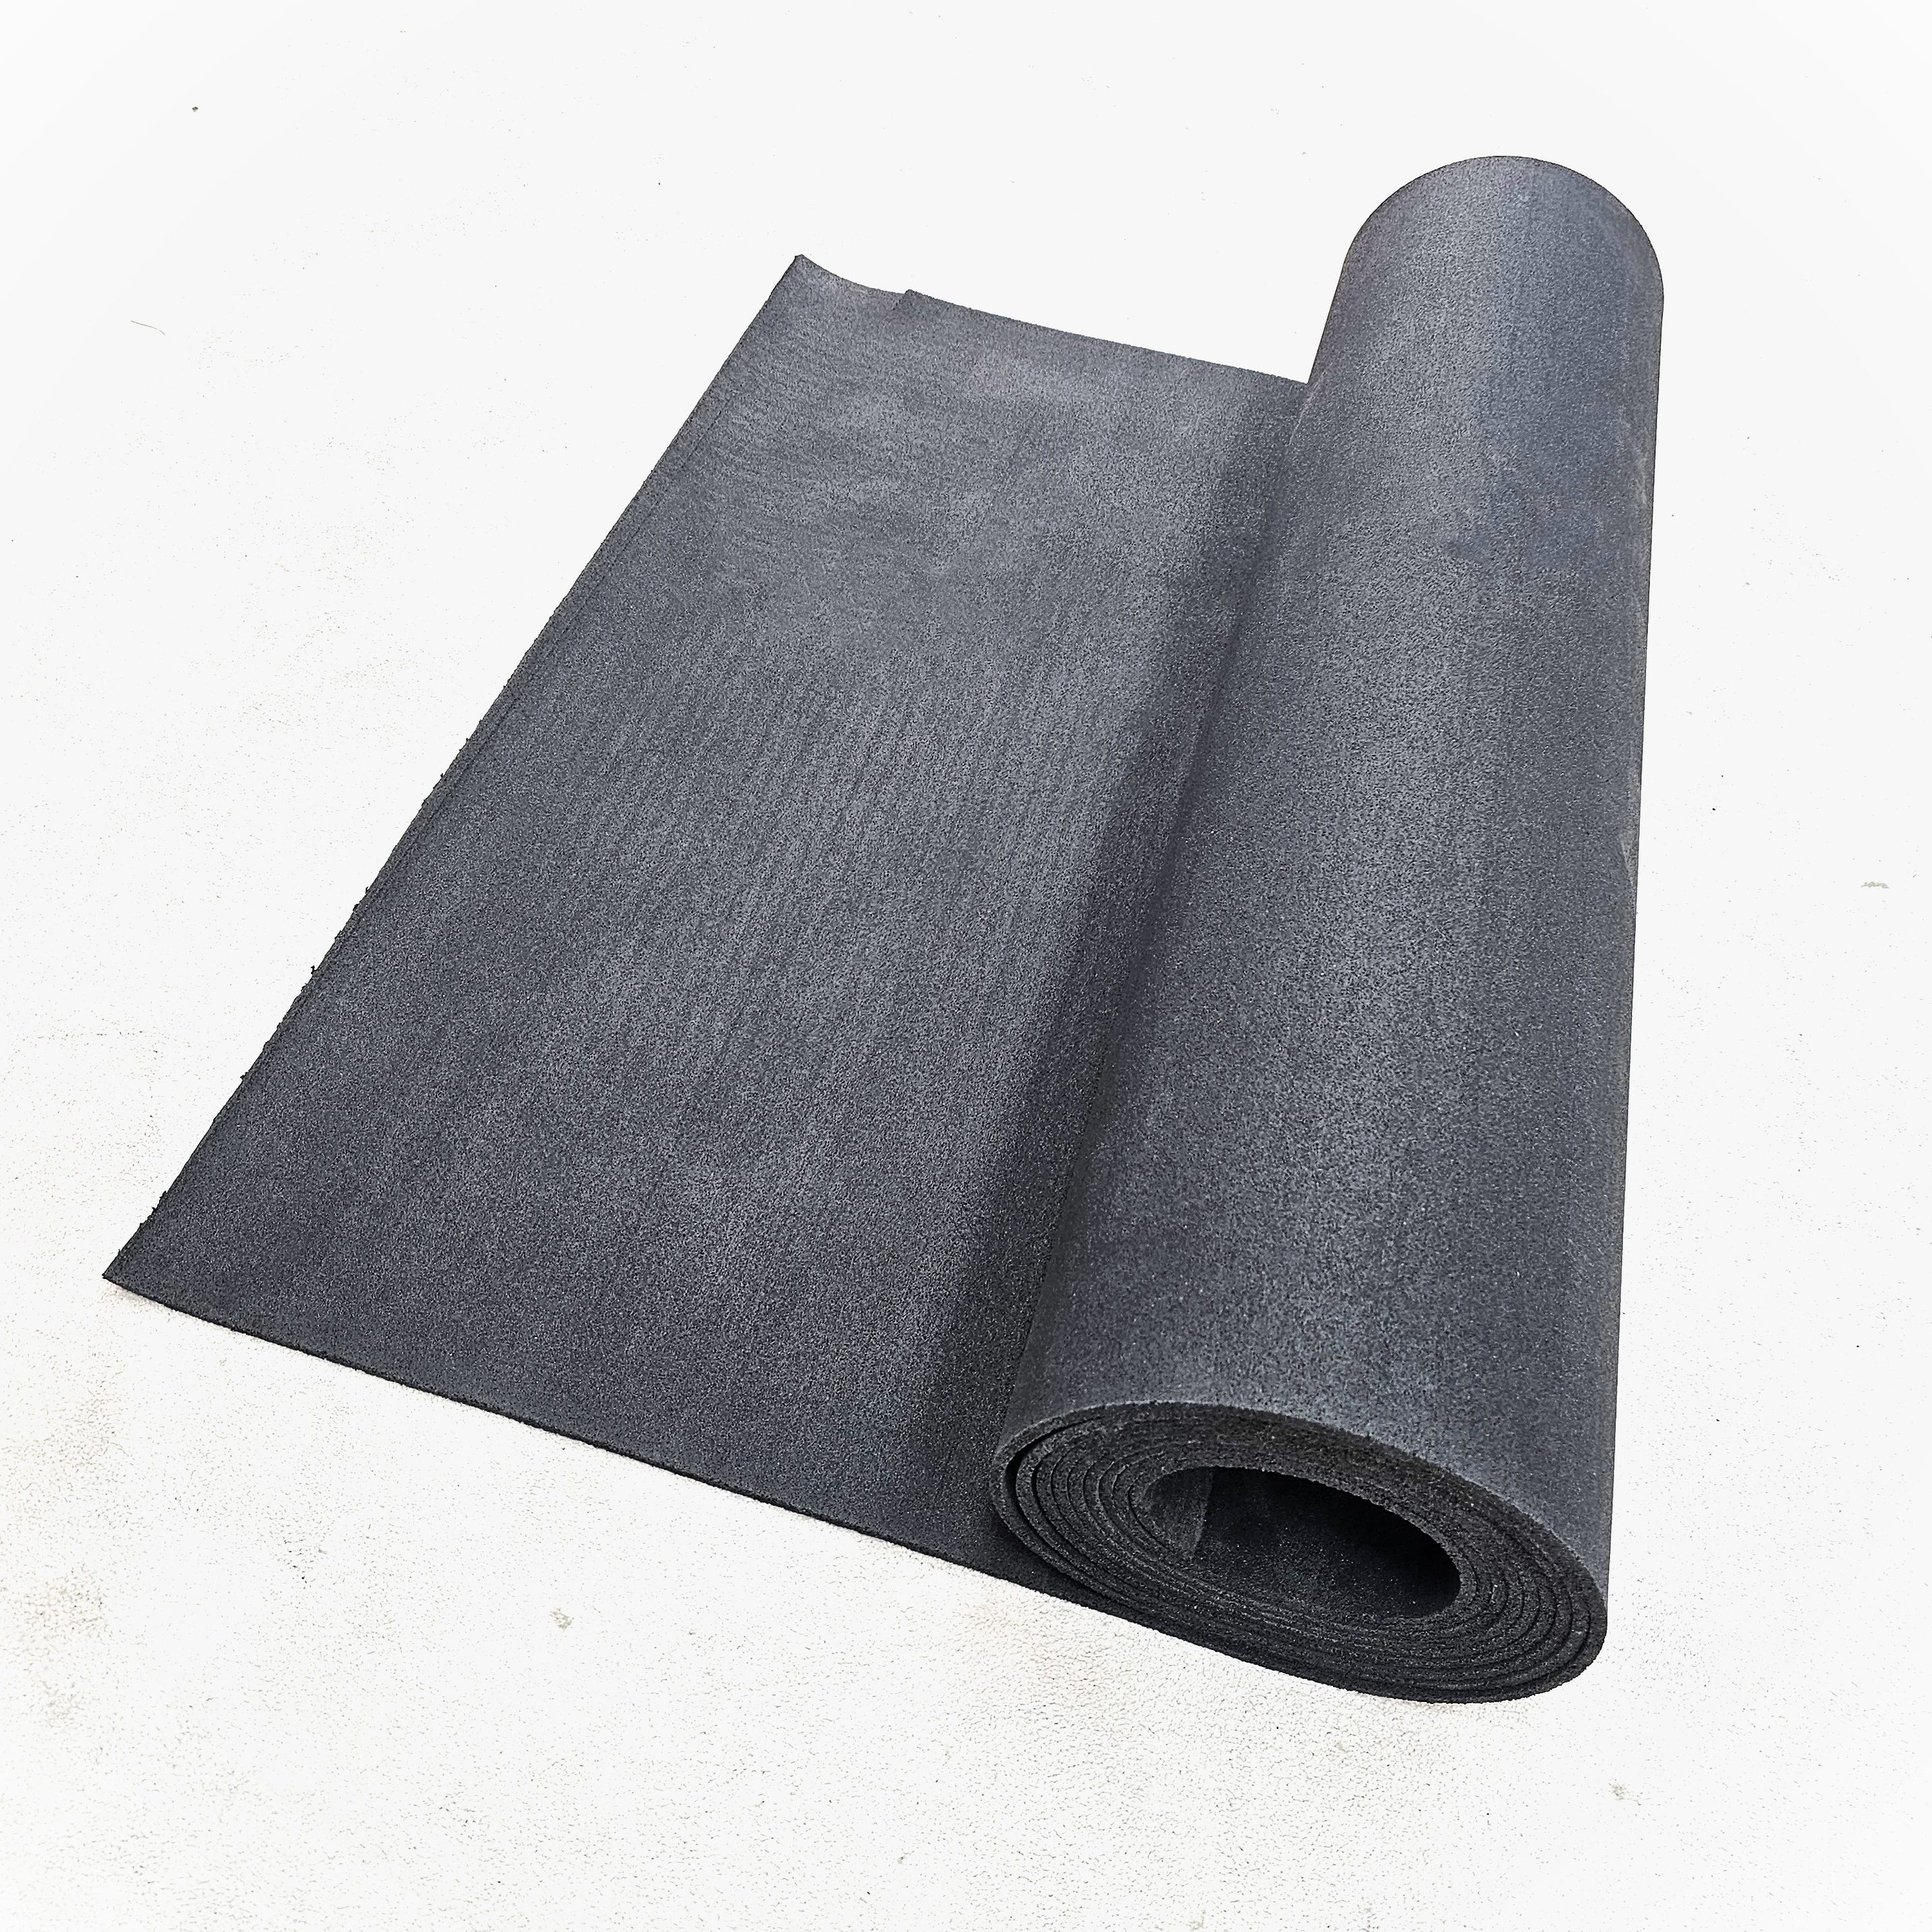  Rollos de PVC para suelos de PVC gris, revestimiento de suelo  de gimnasio, oficina escolar, fácil de pegar y pelar, grosor de 0.063 in  (tamaño : 6.6 x 19.7 ft) 